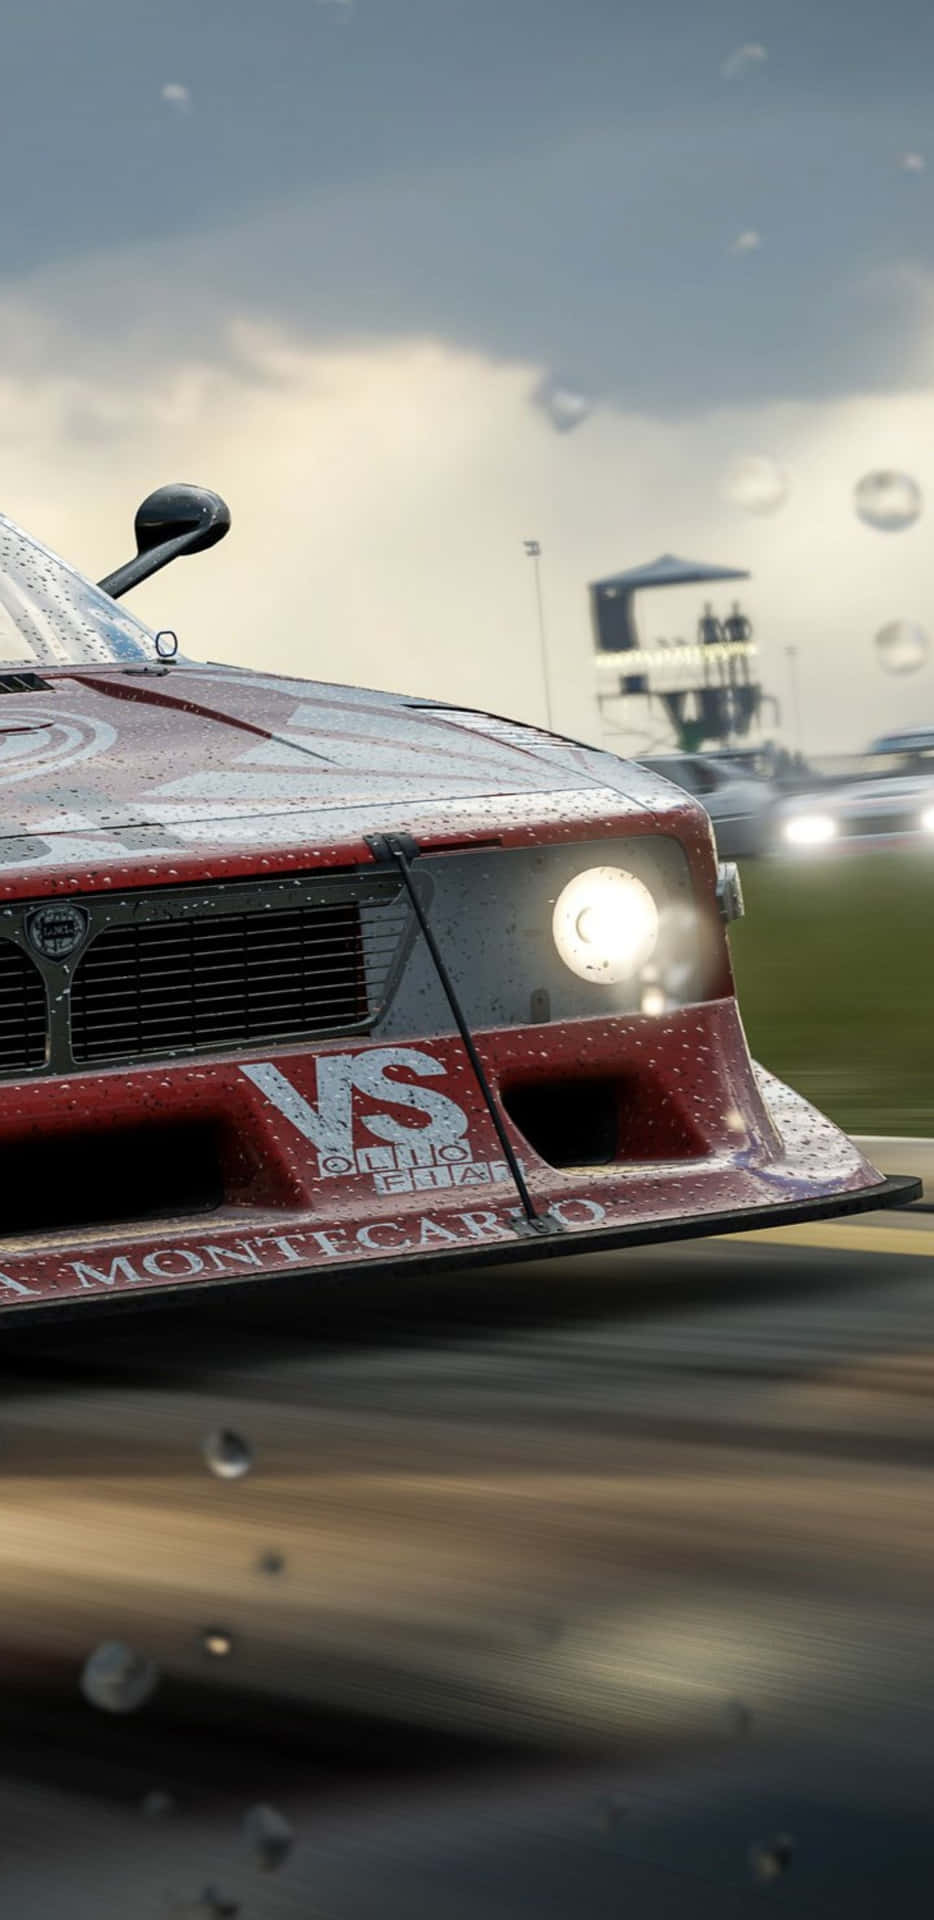 Förloradig Själv I Racing-actionen I Forza Motorsport 7 På Google Pixel 3xl